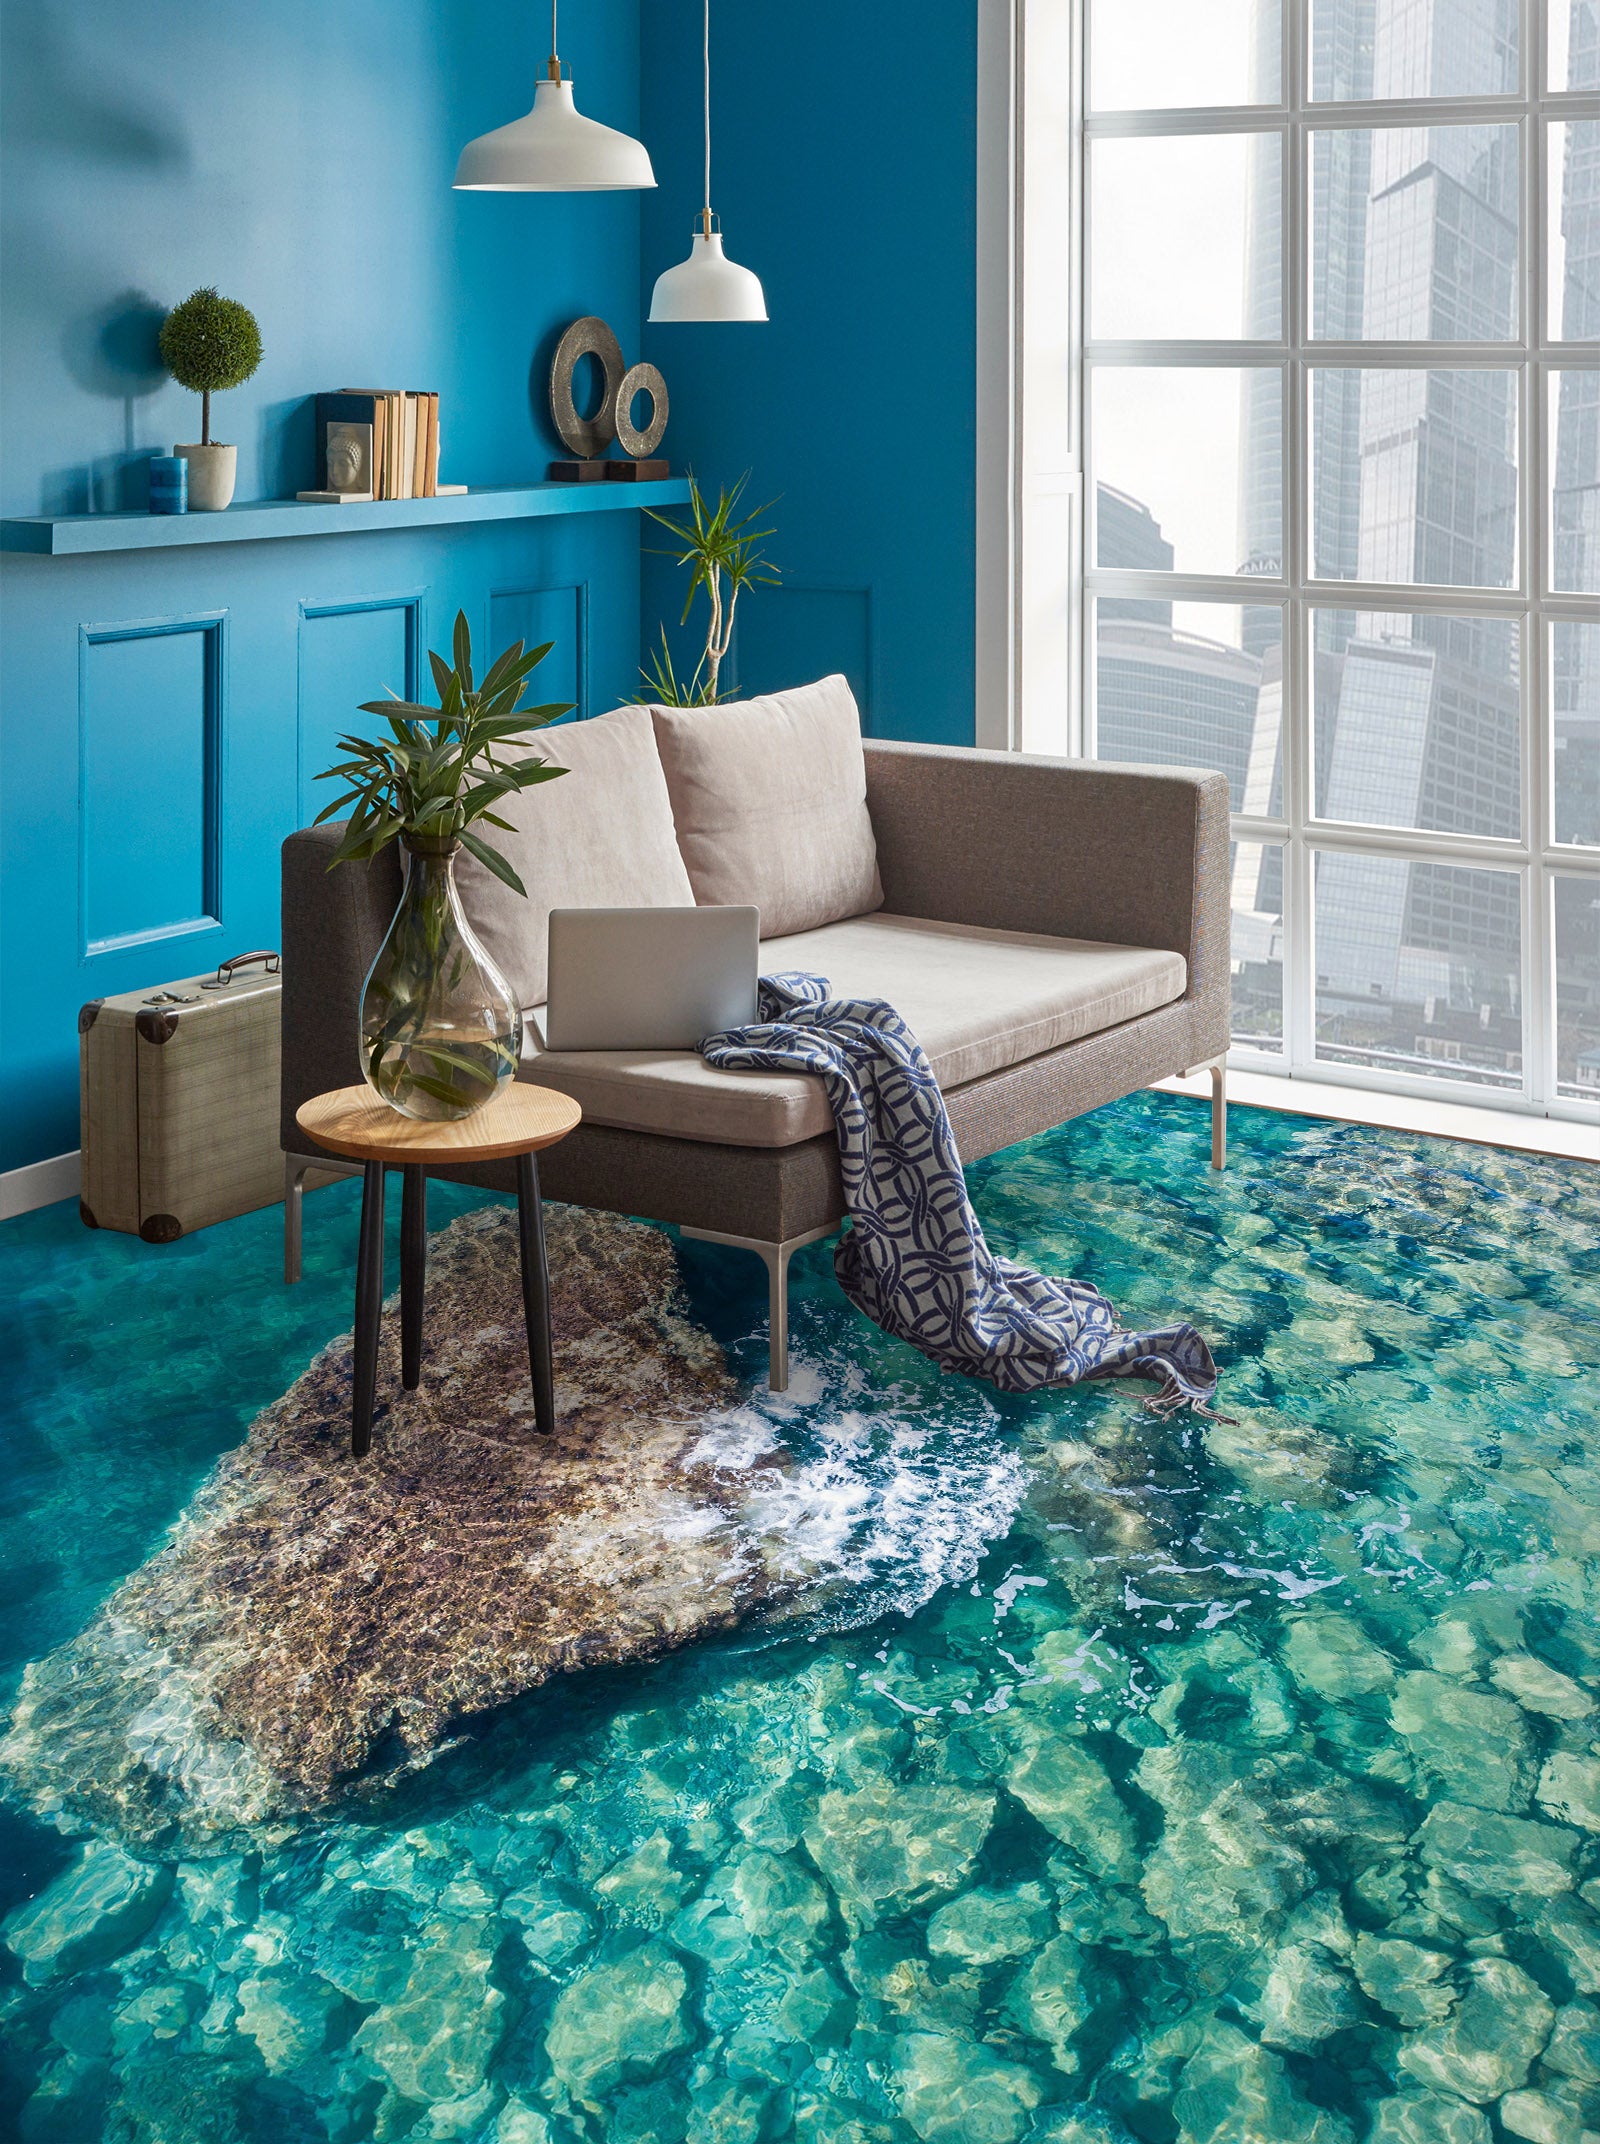 3D Cool Shallow Sea 376 Floor Mural  Wallpaper Murals Rug & Mat Print Epoxy waterproof bath floor